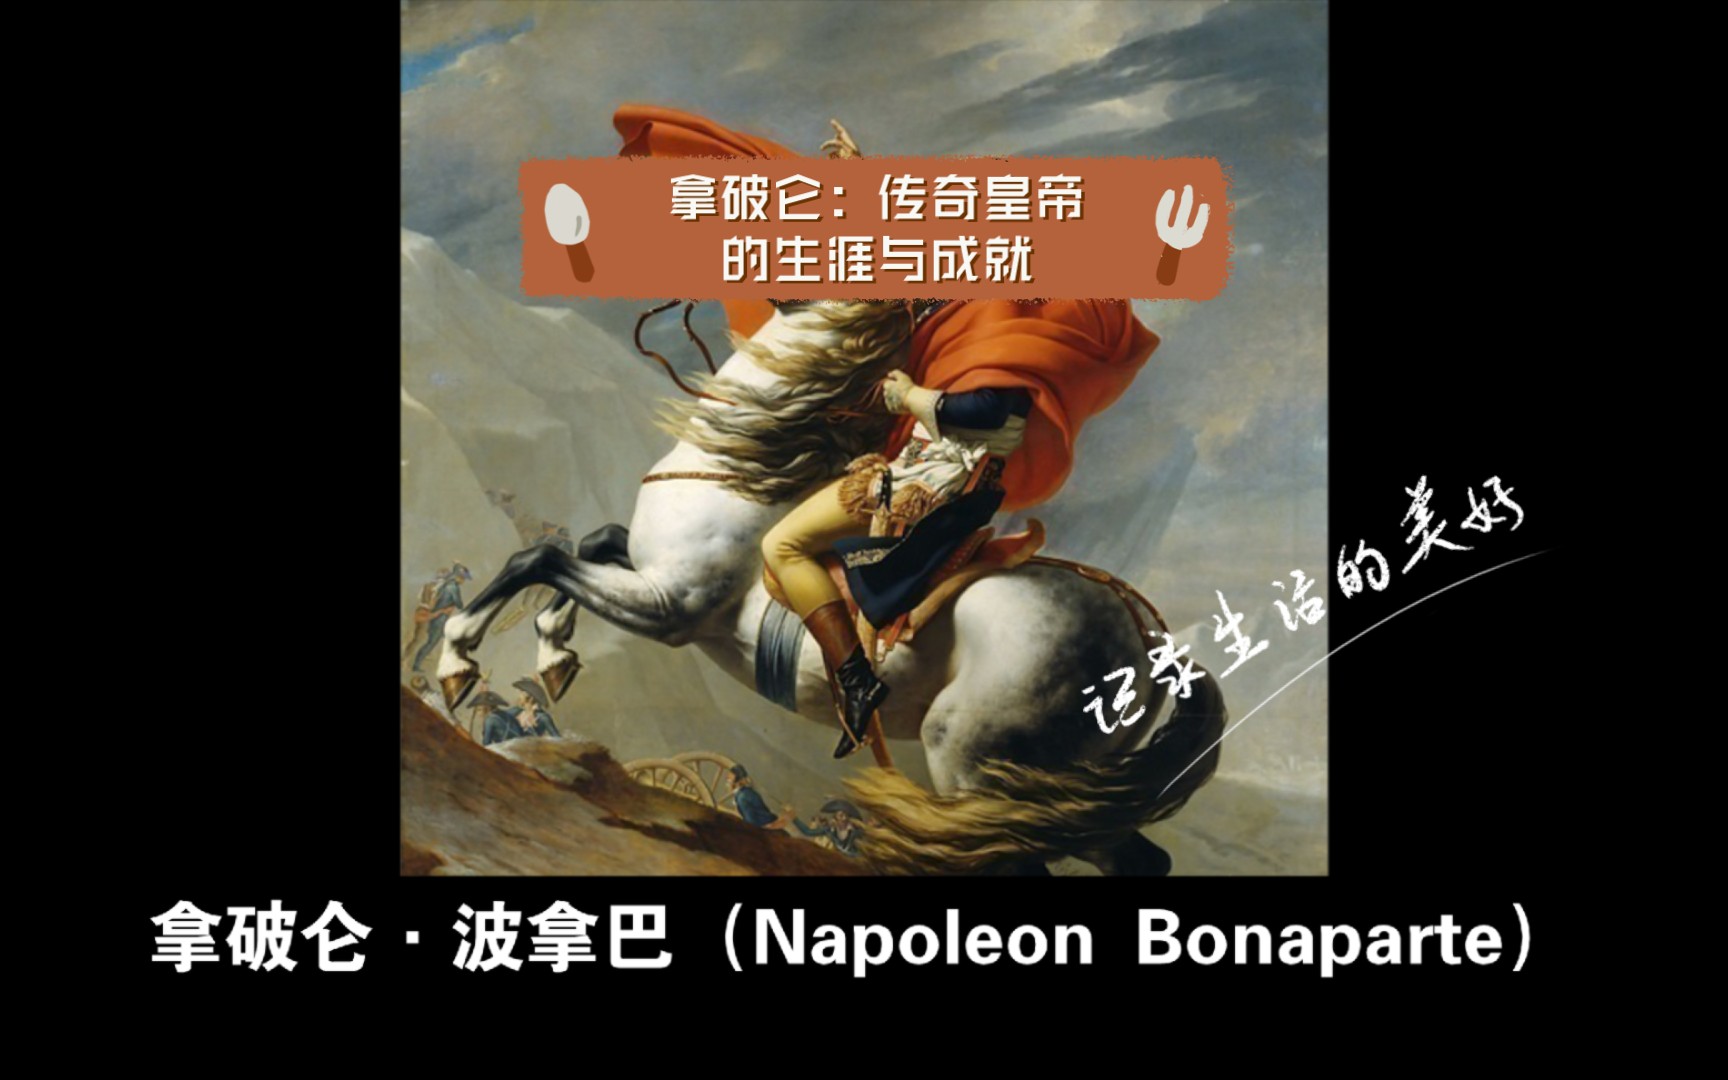 拿破仑:传奇皇帝的生涯与成就